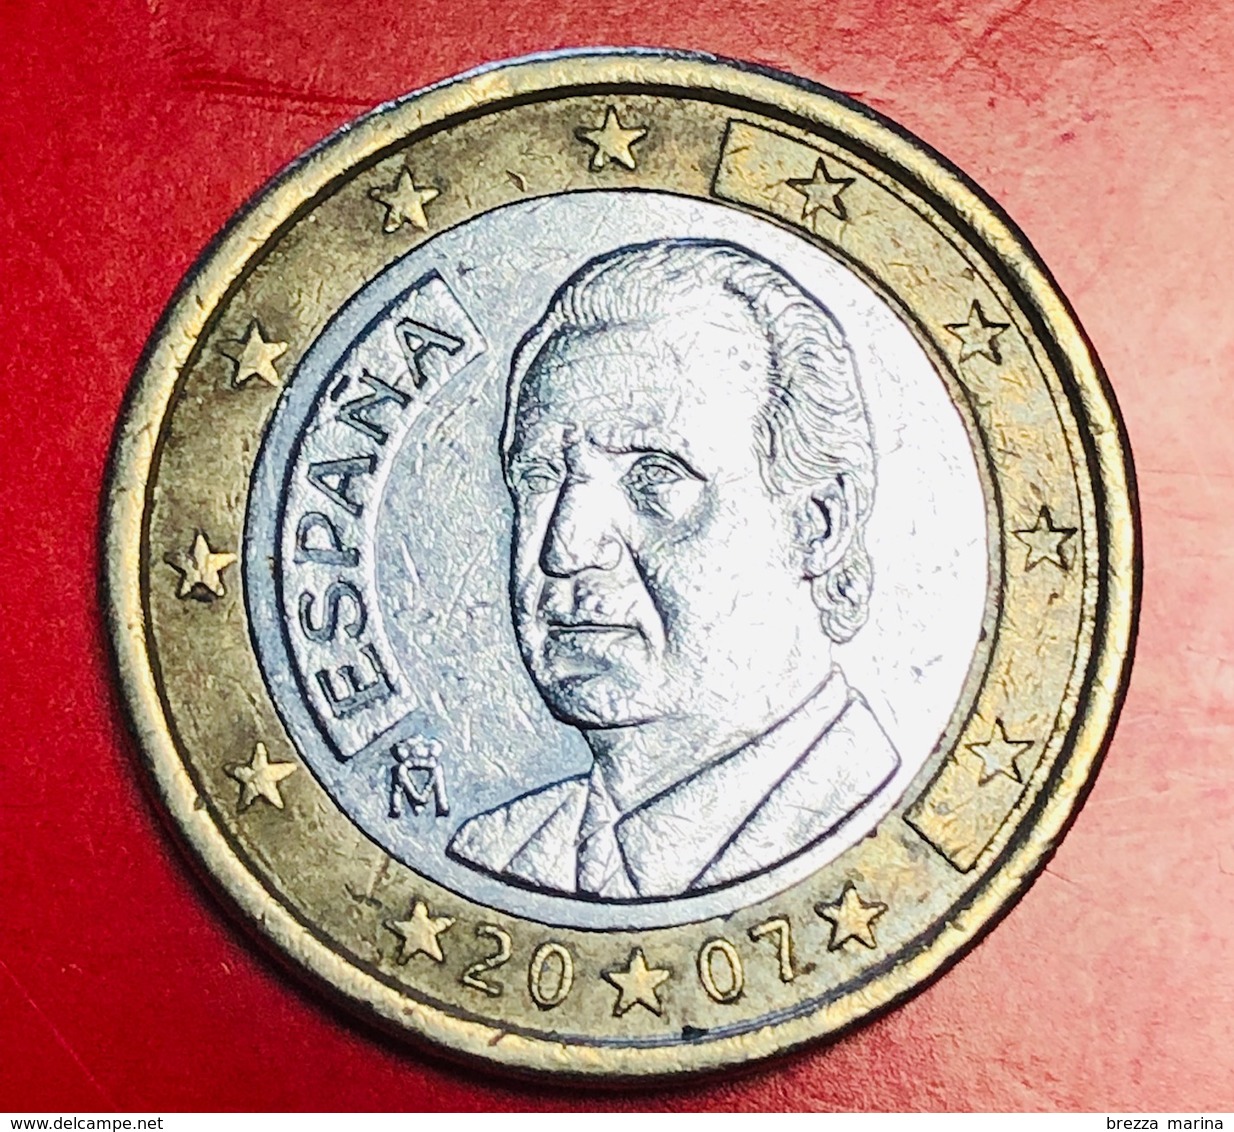 SPAGNA - 2007 - Moneta - Ritratto Di Re Juan Carlos I Di Borbone - Euro - 1.00 - Slowenien